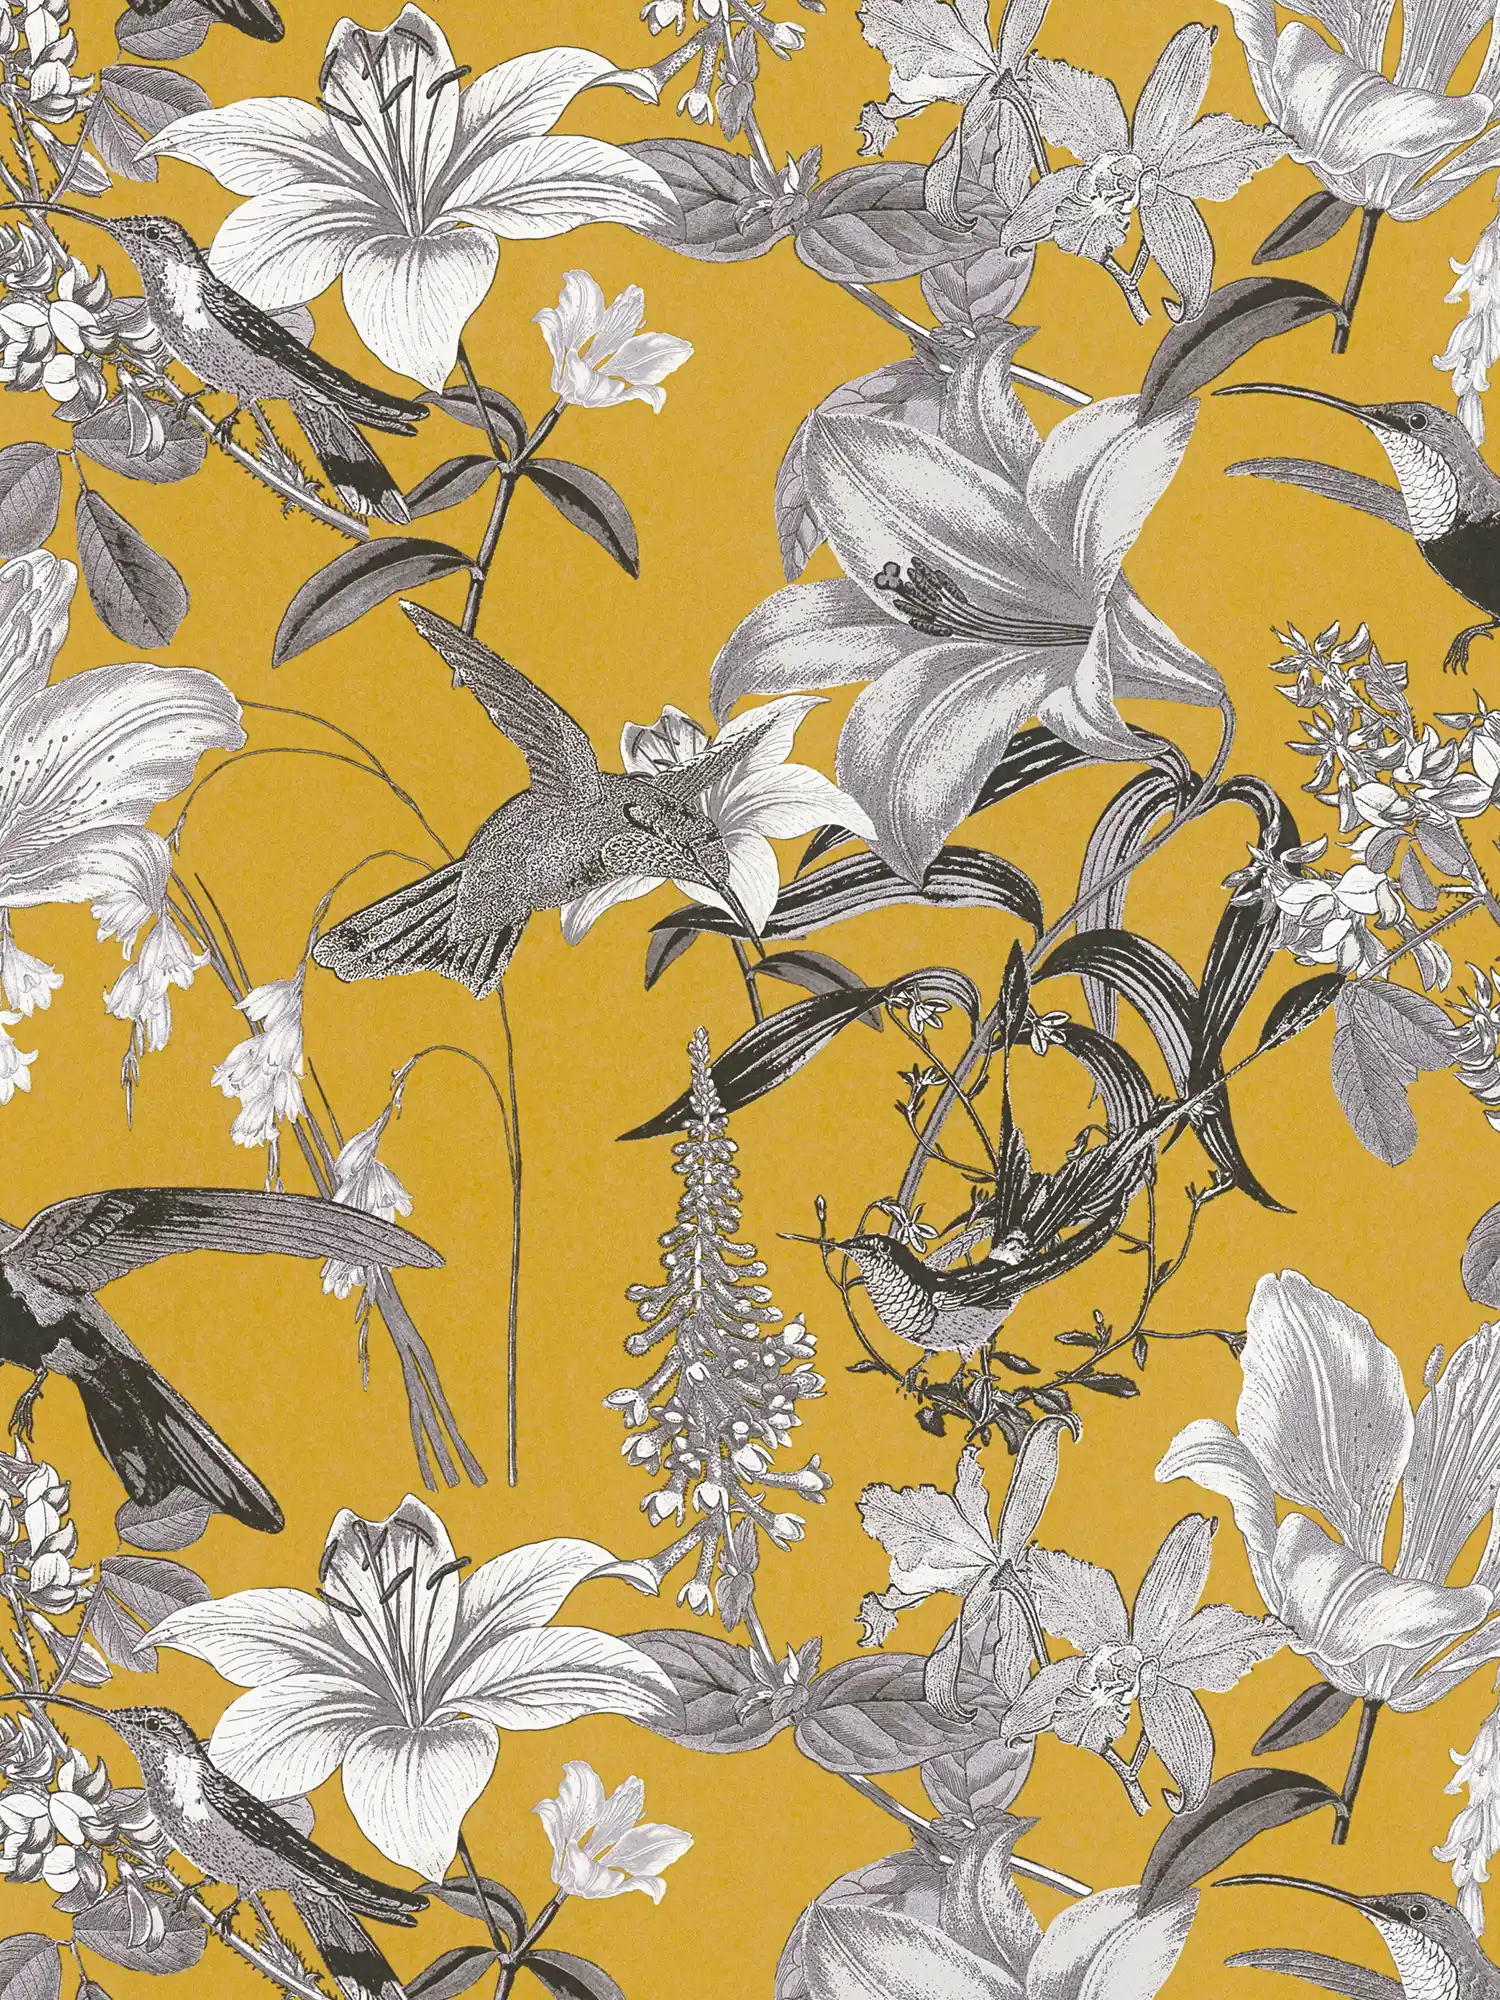 Papier peint fleuri jaune moutarde avec motif fleurs & colibri - jaune, gris, noir
